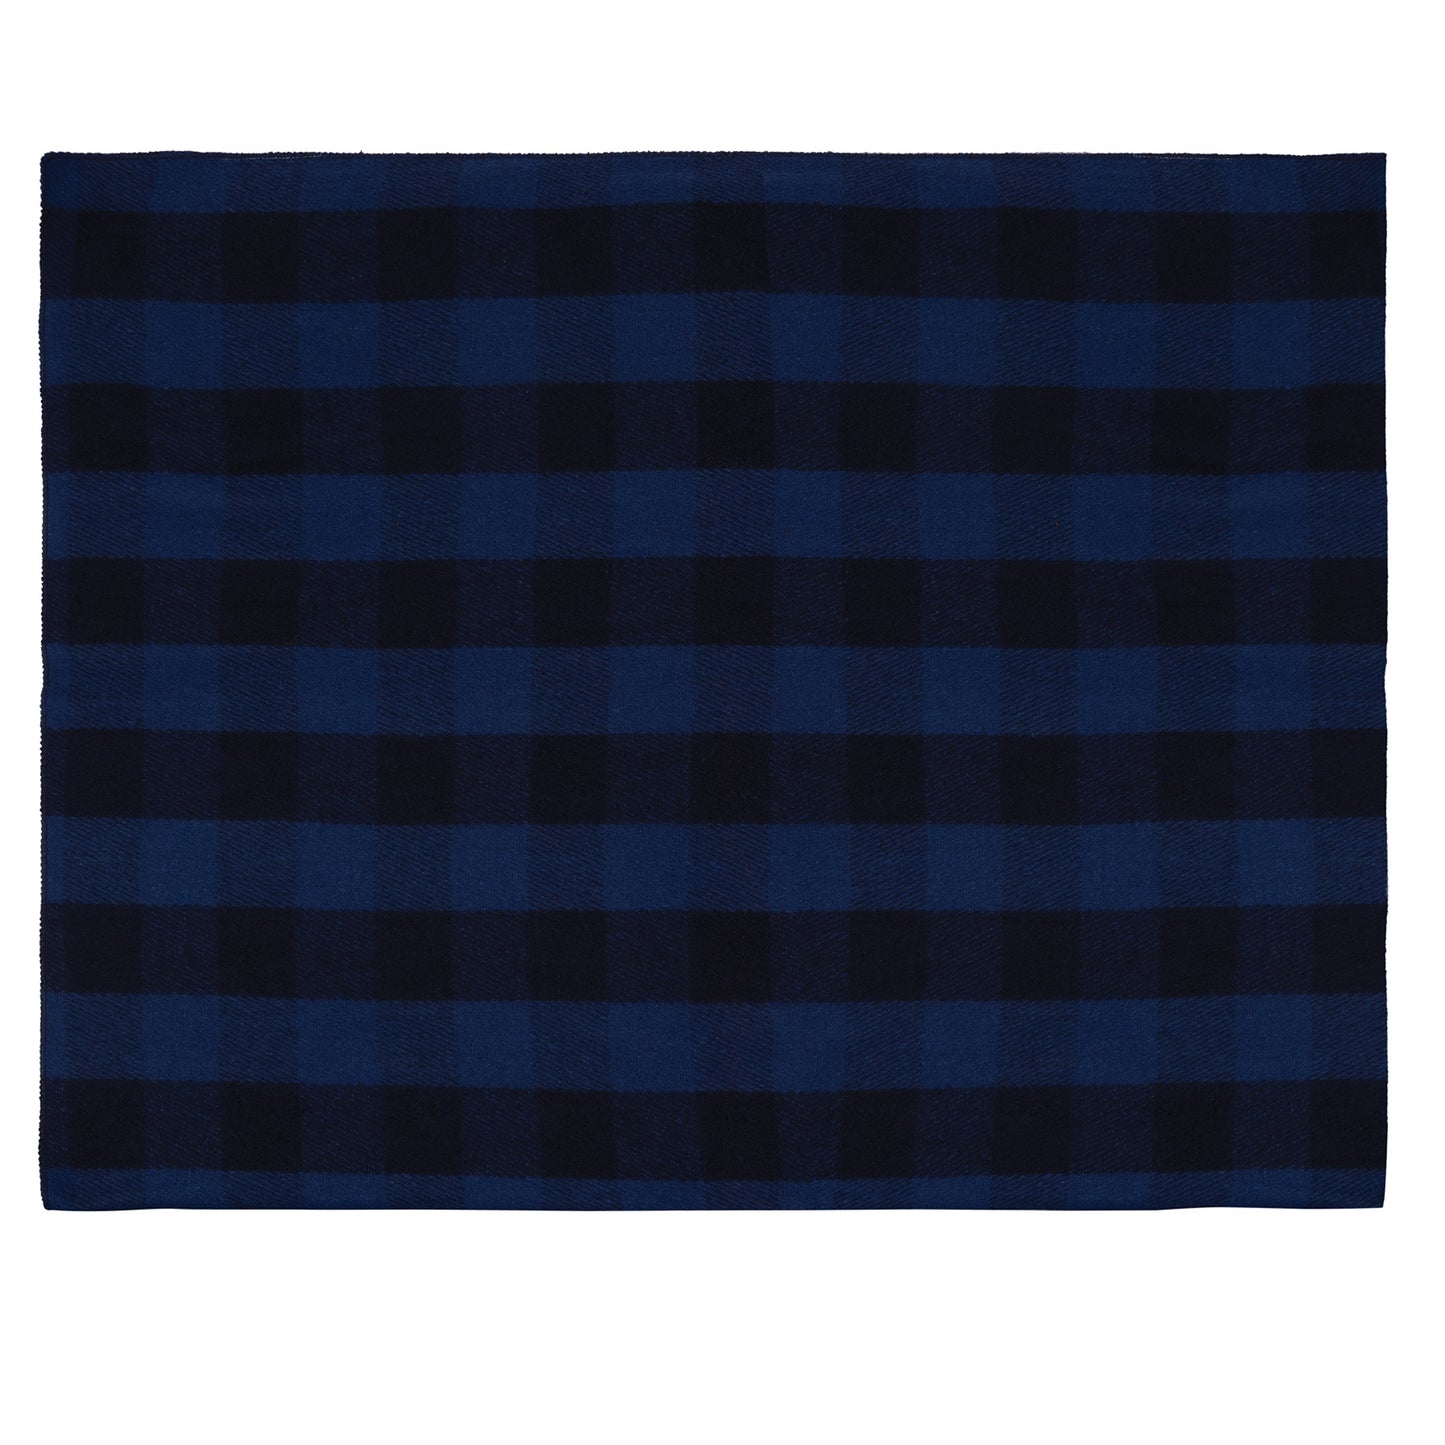 Rothco Plaid Wool Blanket 62"x 80"